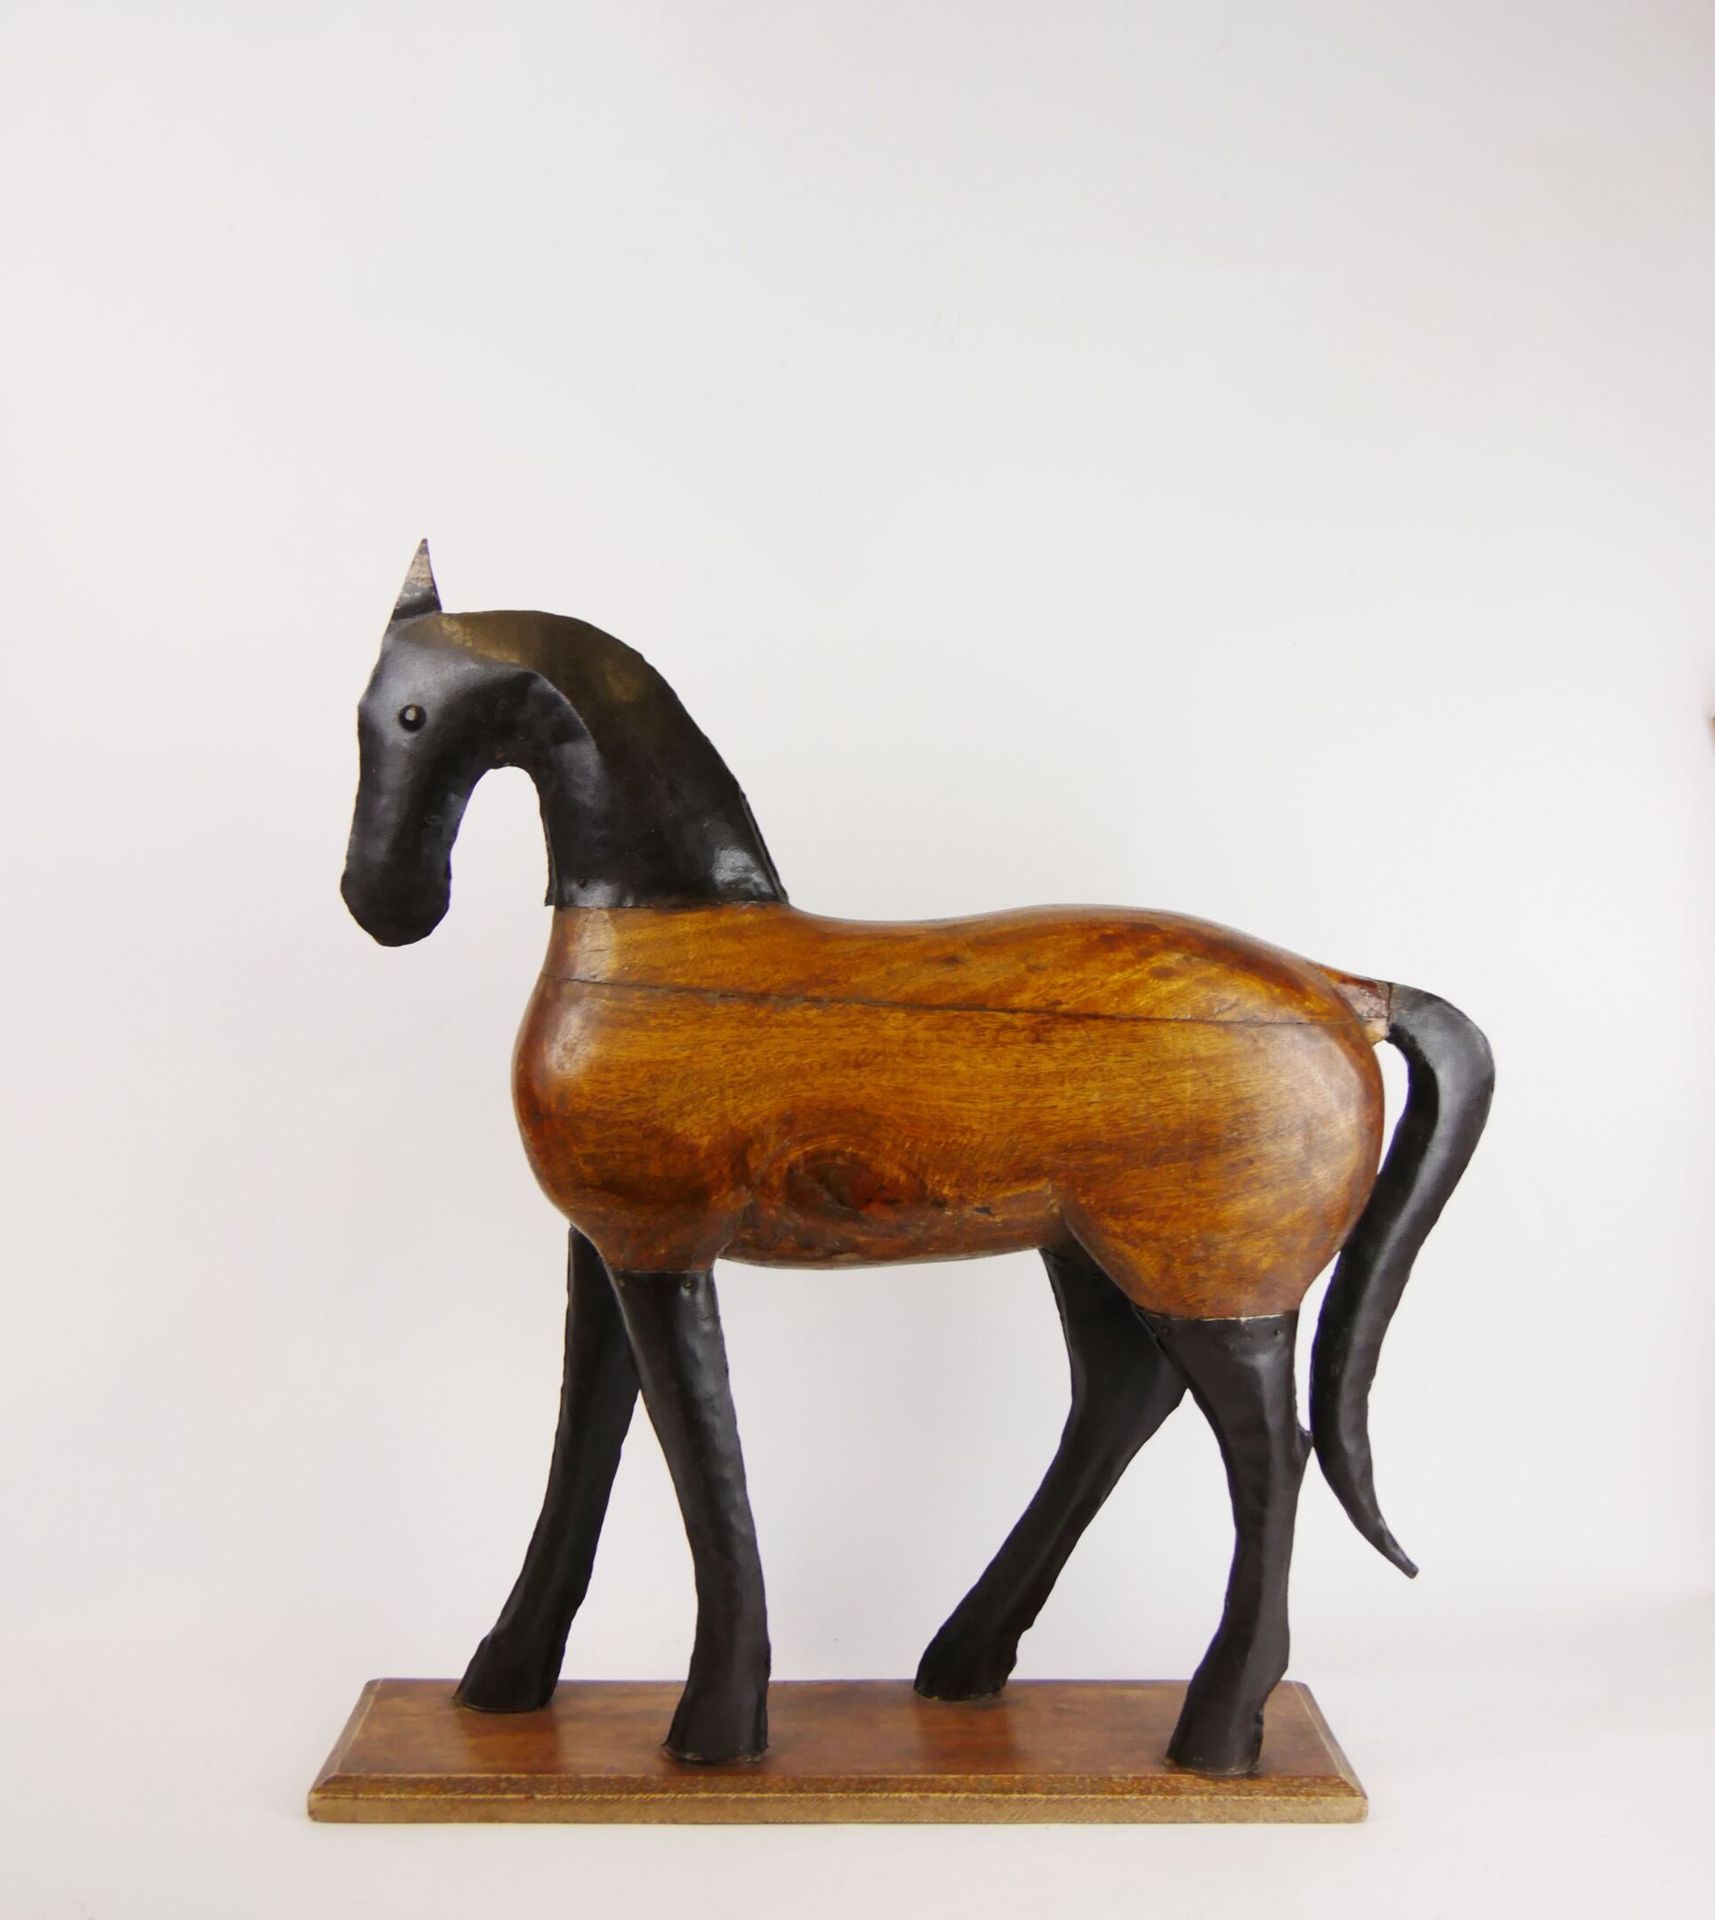 Null 雕刻的木头和黑漆的金属马放置在一个长方形的底座上。现代装饰元素。

尺寸：63 x 52 x 14厘米



抽签将于2021年12月17日星期五在巴&hellip;